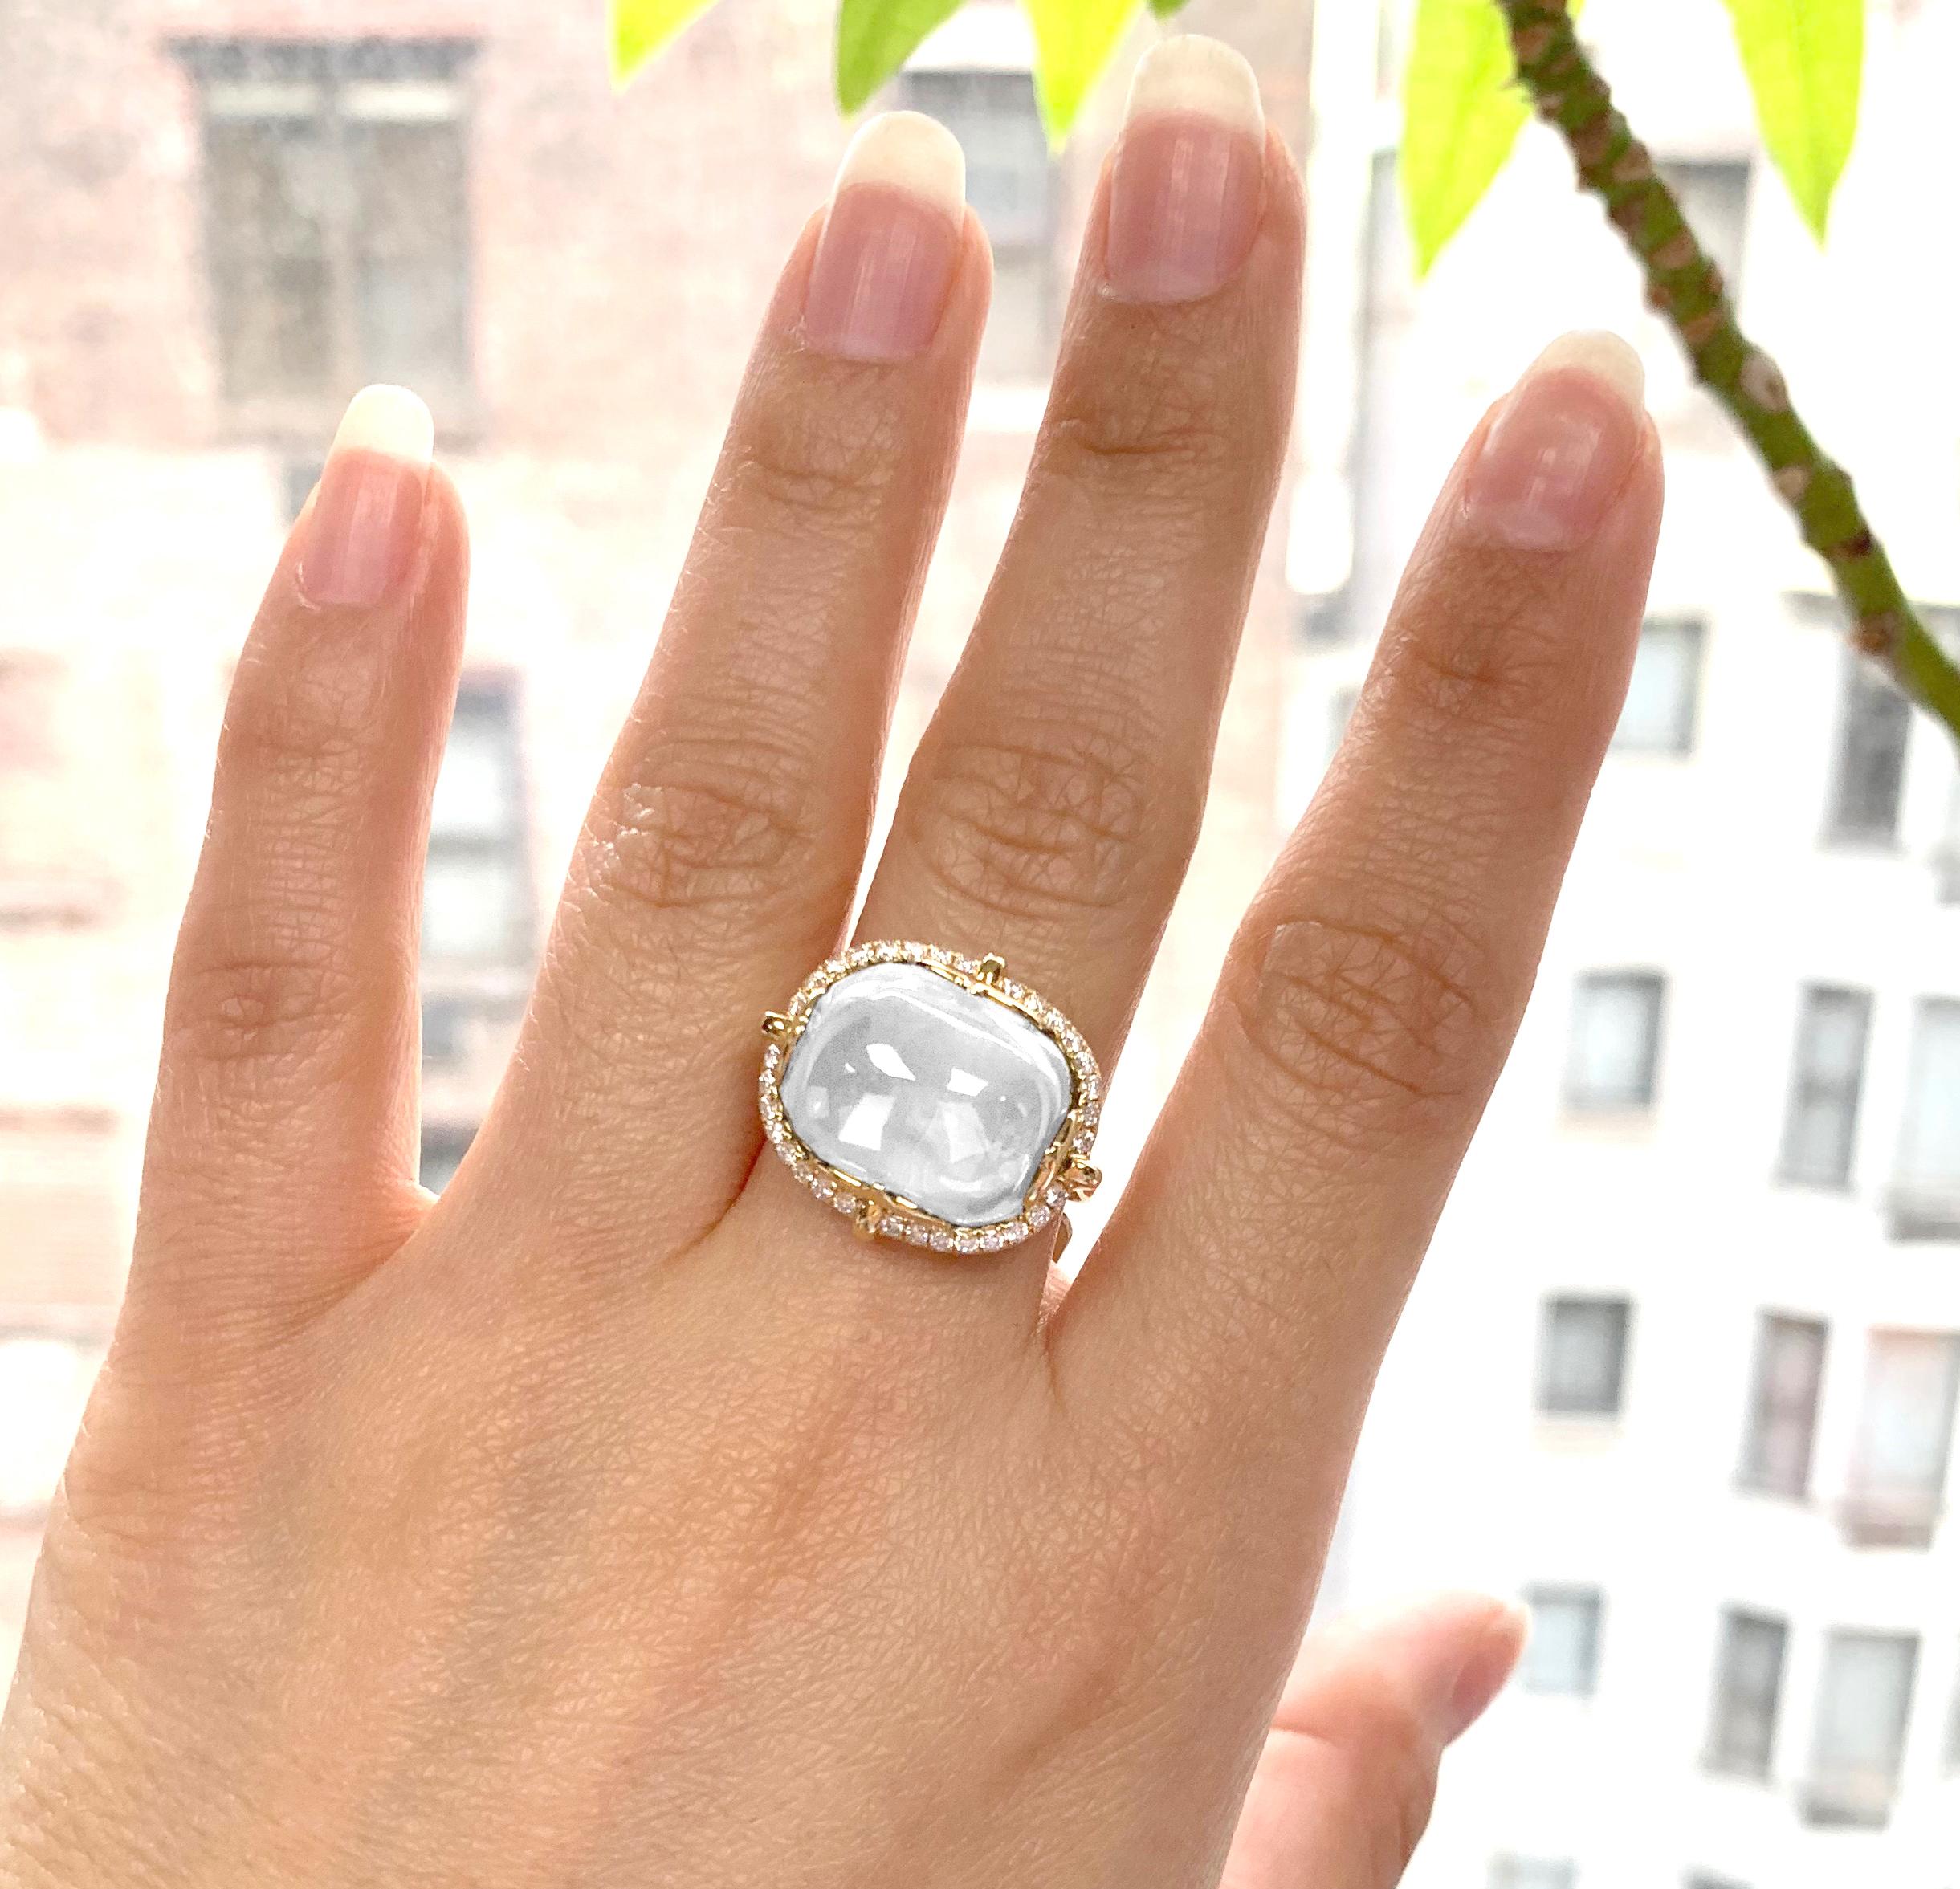 Mondquarz Cushion Cabochon Ring in 18K mit Diamanten, aus 'Rock 'N Roll' Kollektion.
Bitte rechnen Sie mit einer Lieferzeit von 2-4 Wochen für diesen Artikel.

Steingröße: 16 x 13 mm 

Diamanten: G-H / VS, Ungefähres Gewicht: 0.34 Karat